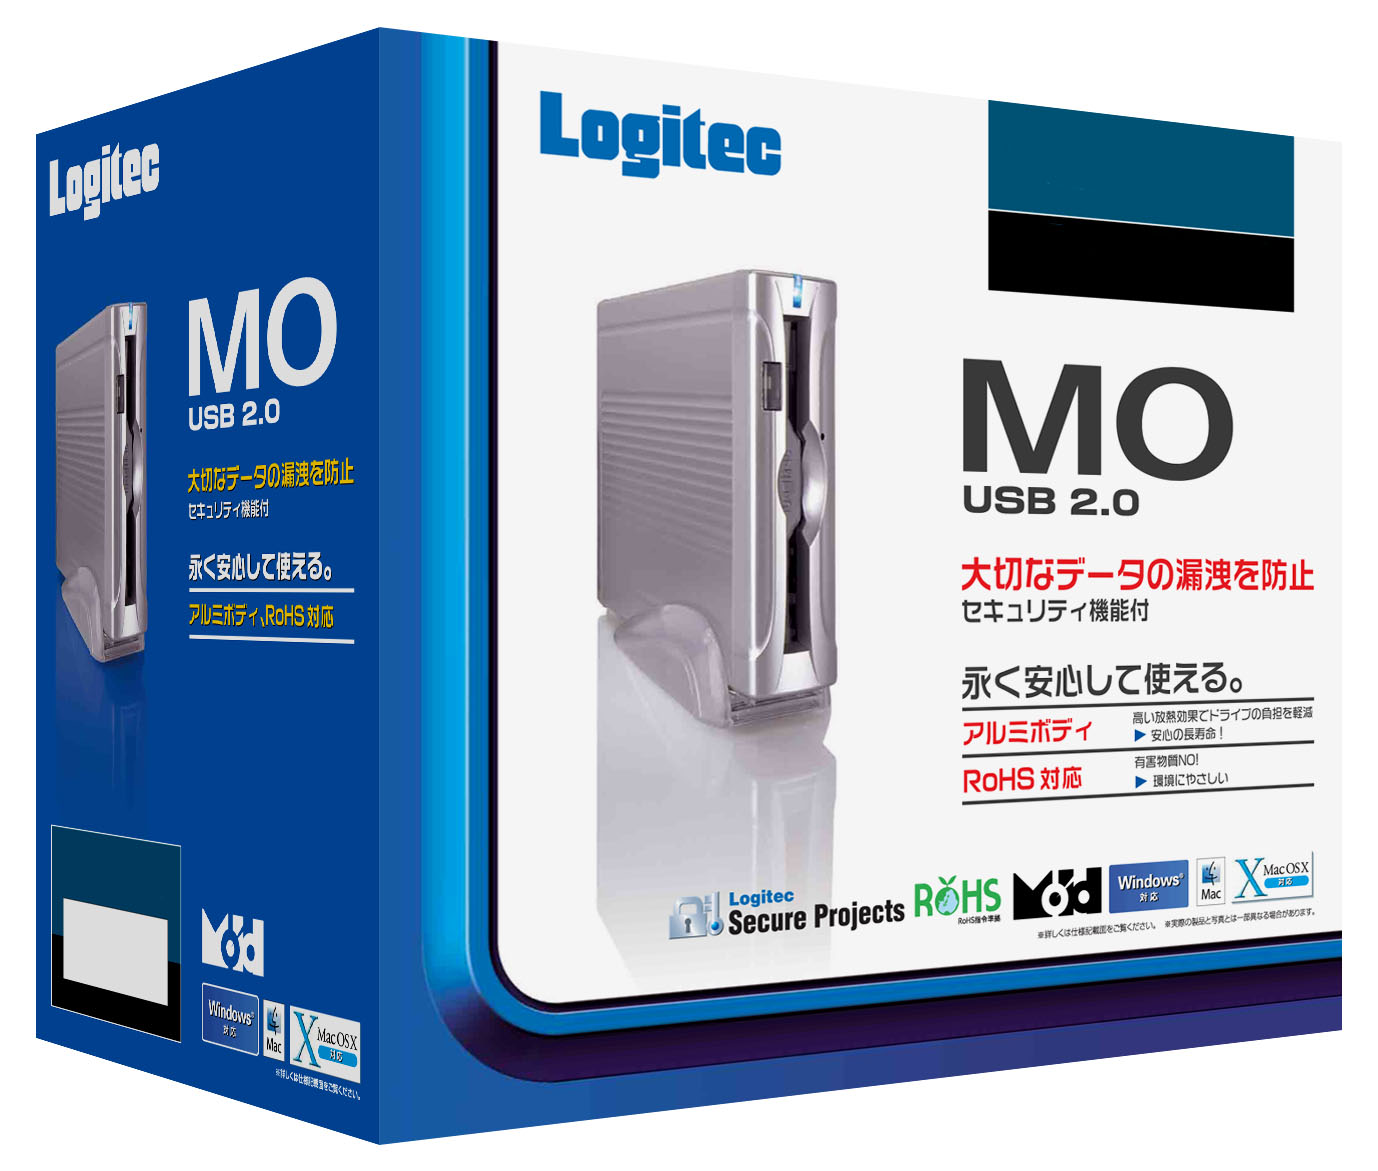 Logitec USB 2.0外付型640MB MOユニット LMO-FA665U2 - 4